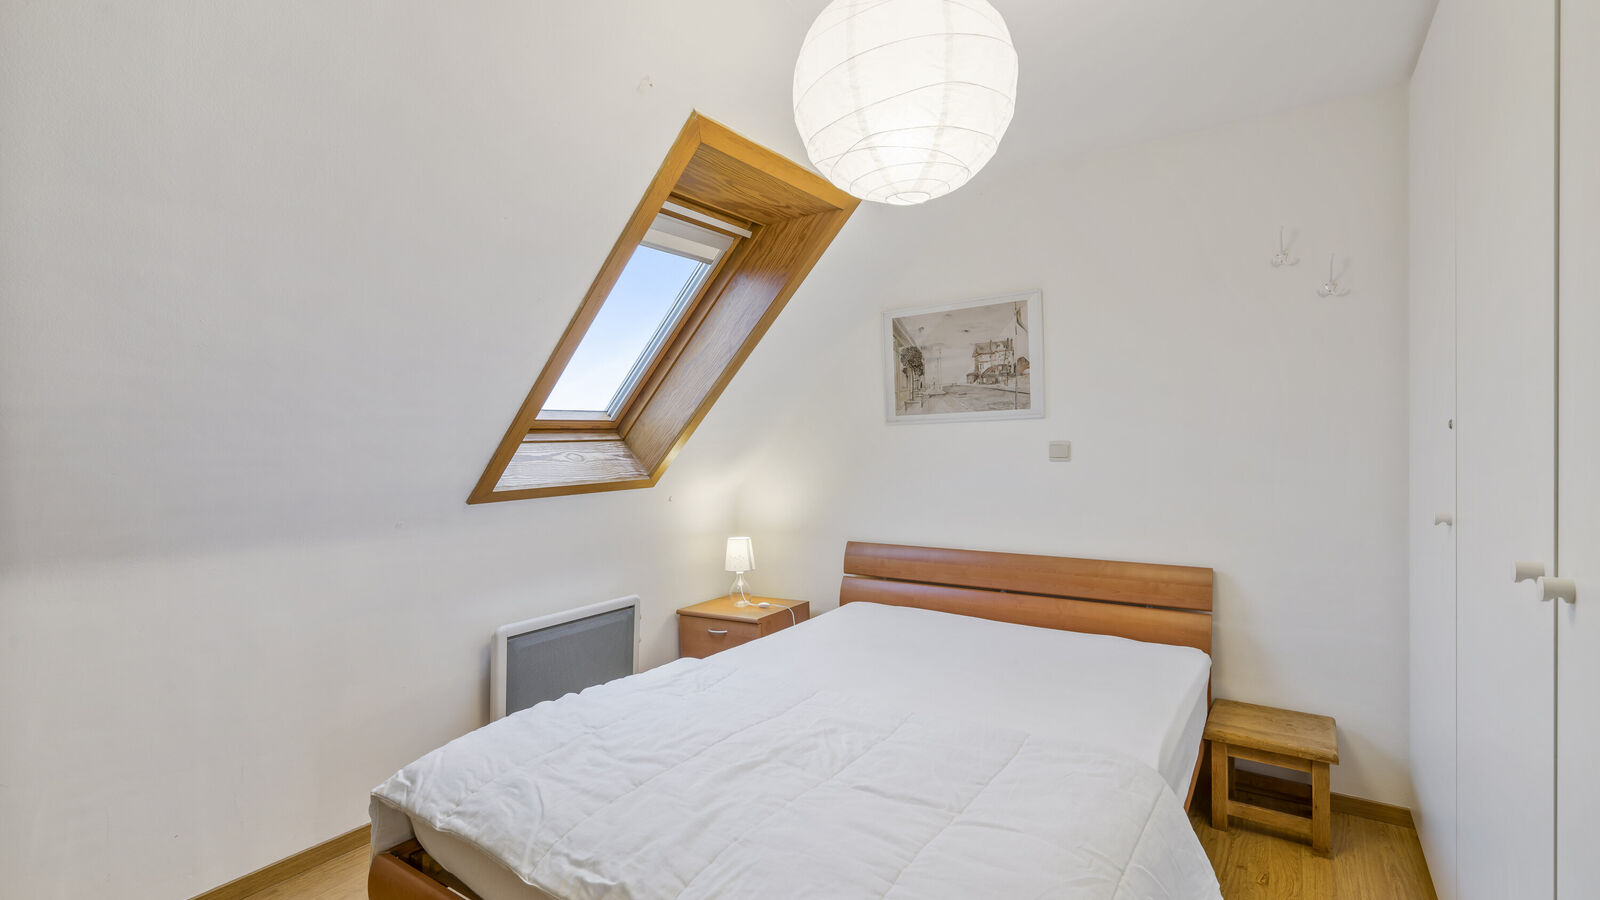 App. 3 bedrooms in Koksijde